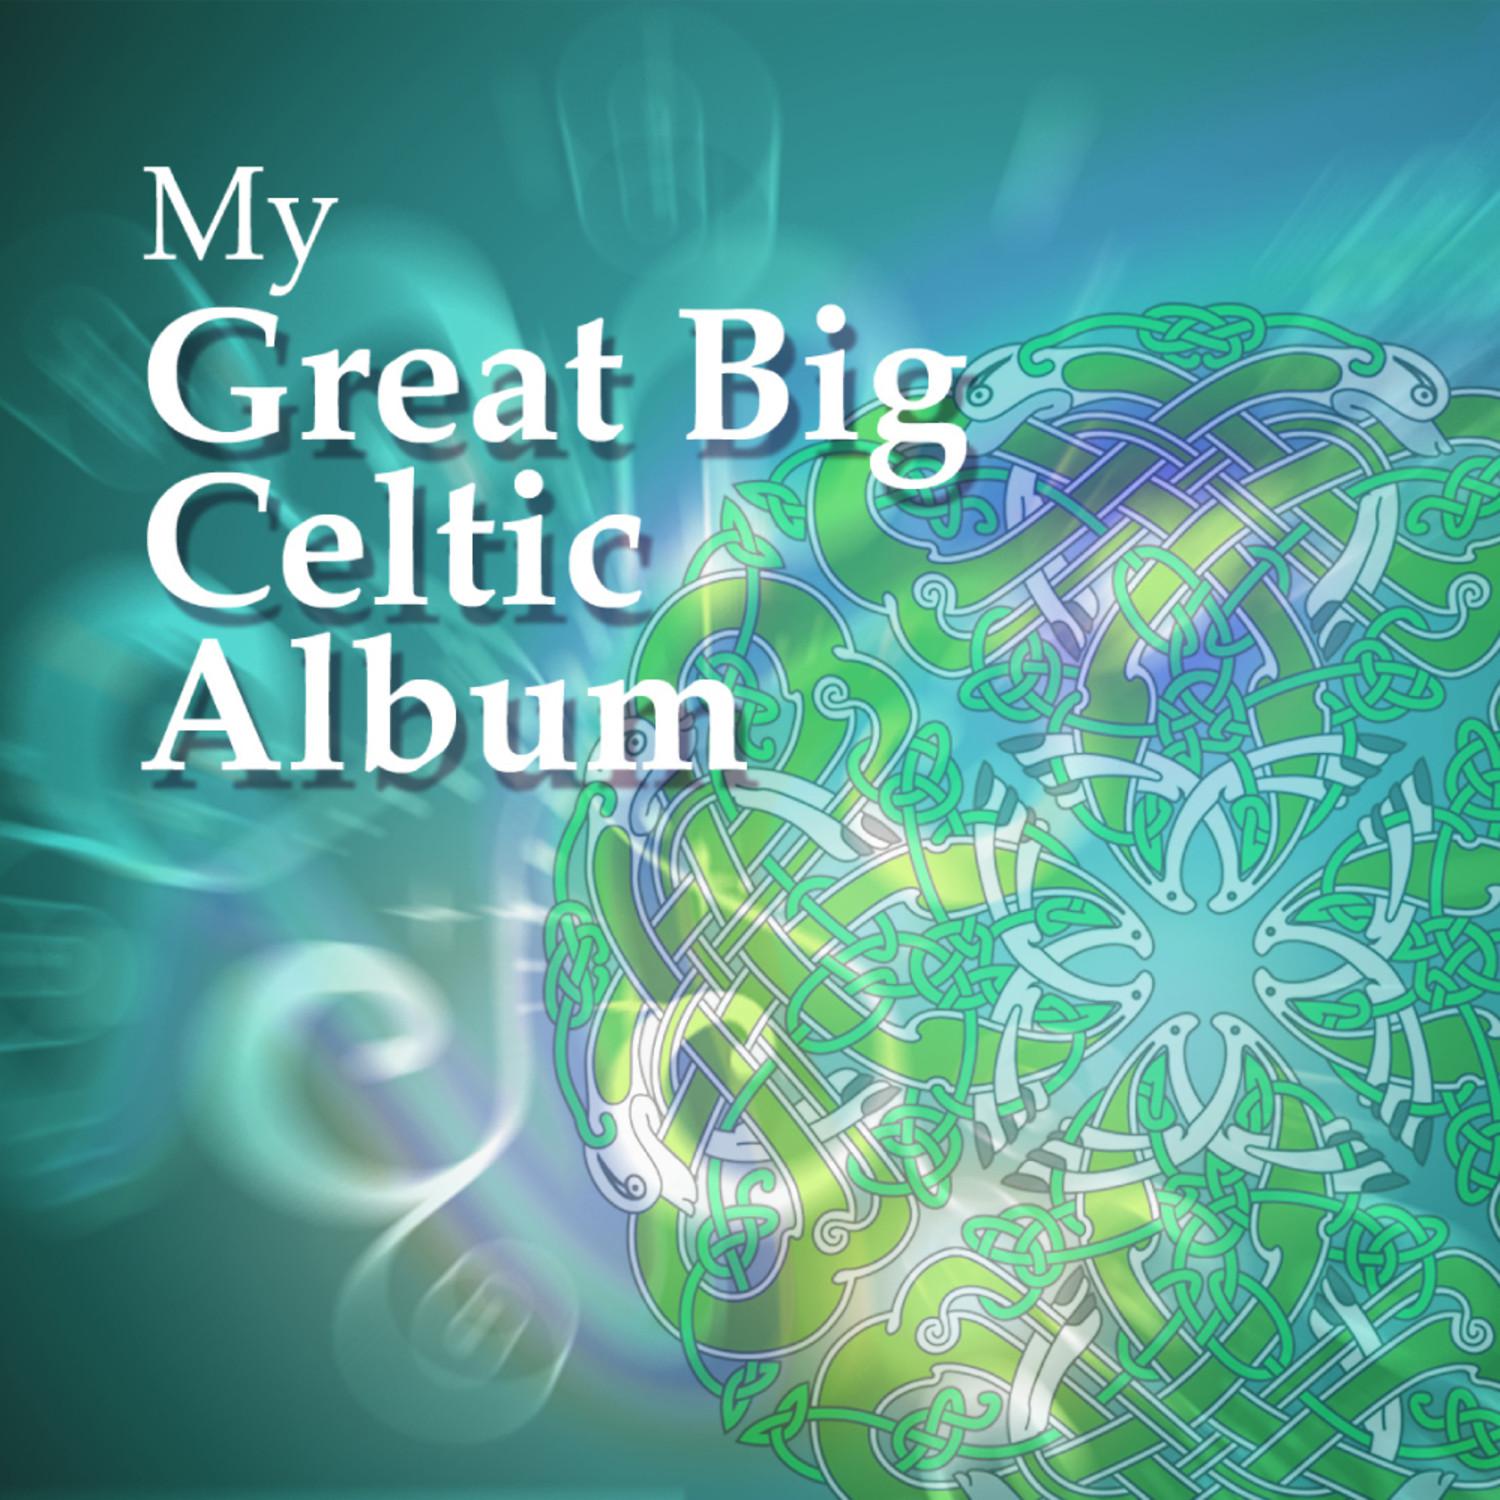 My Great Big Celtic Album